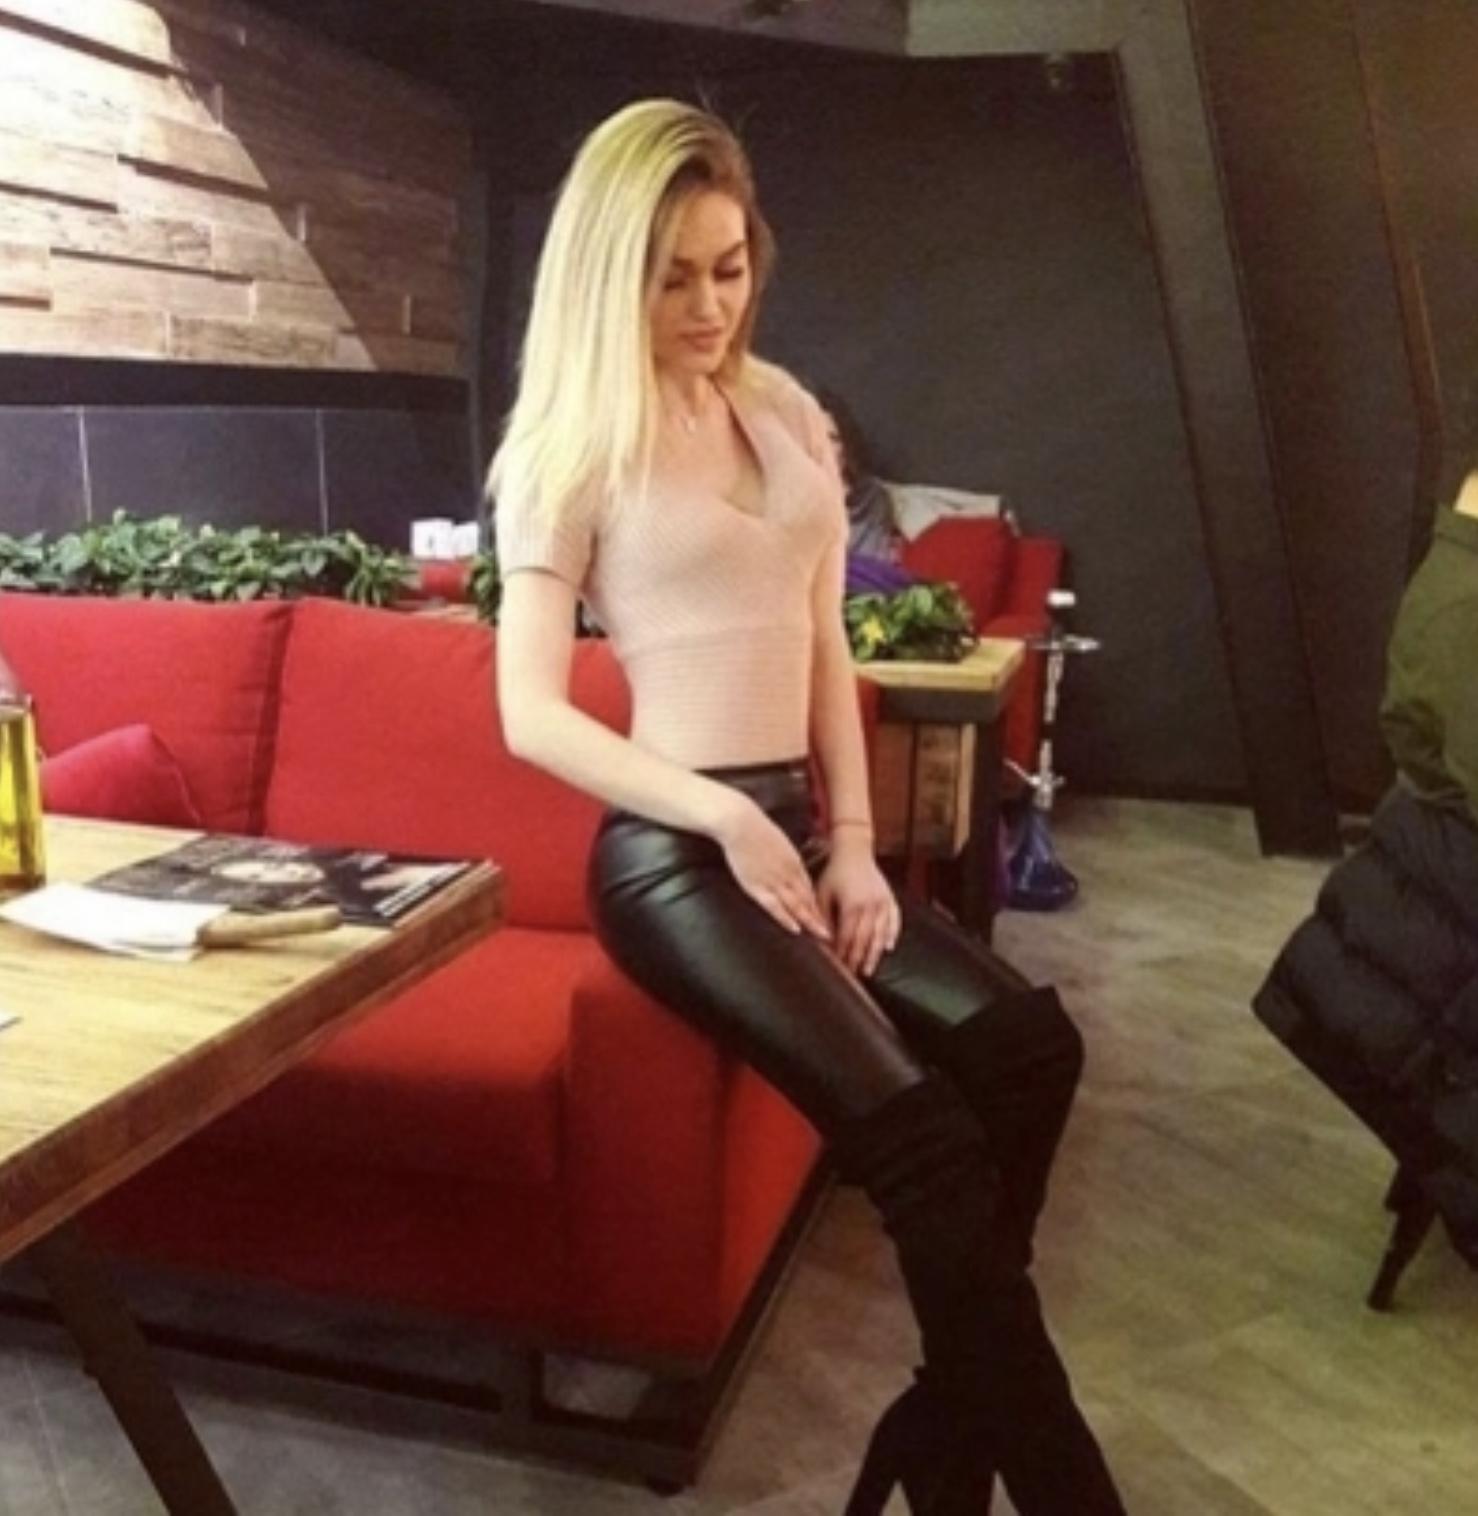 Проститутка Lesya, фото 1, тел: 0984987952. Dniprovskiy area - Киев